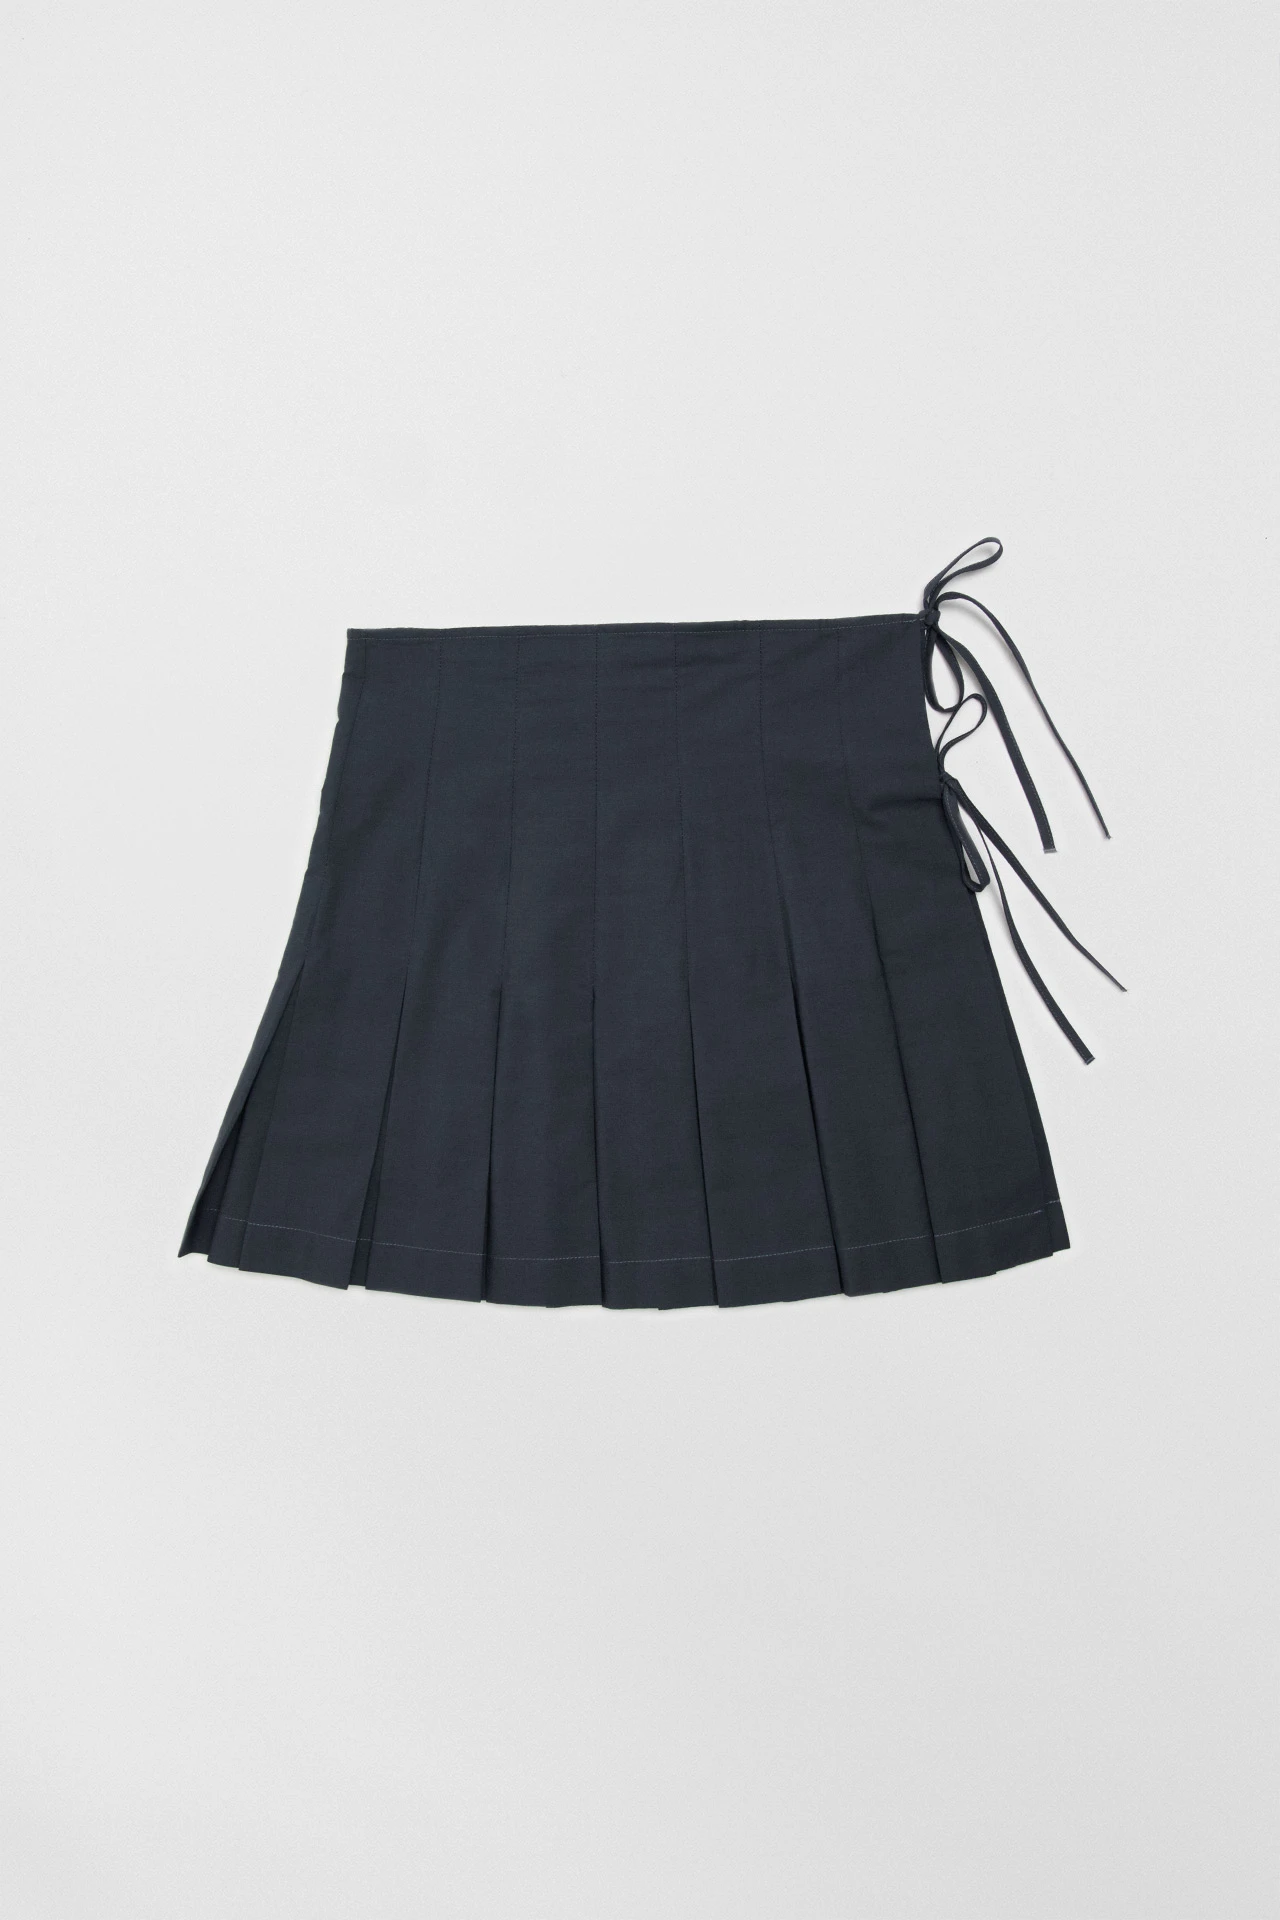 Miista-richelle-petrol-skirt-01